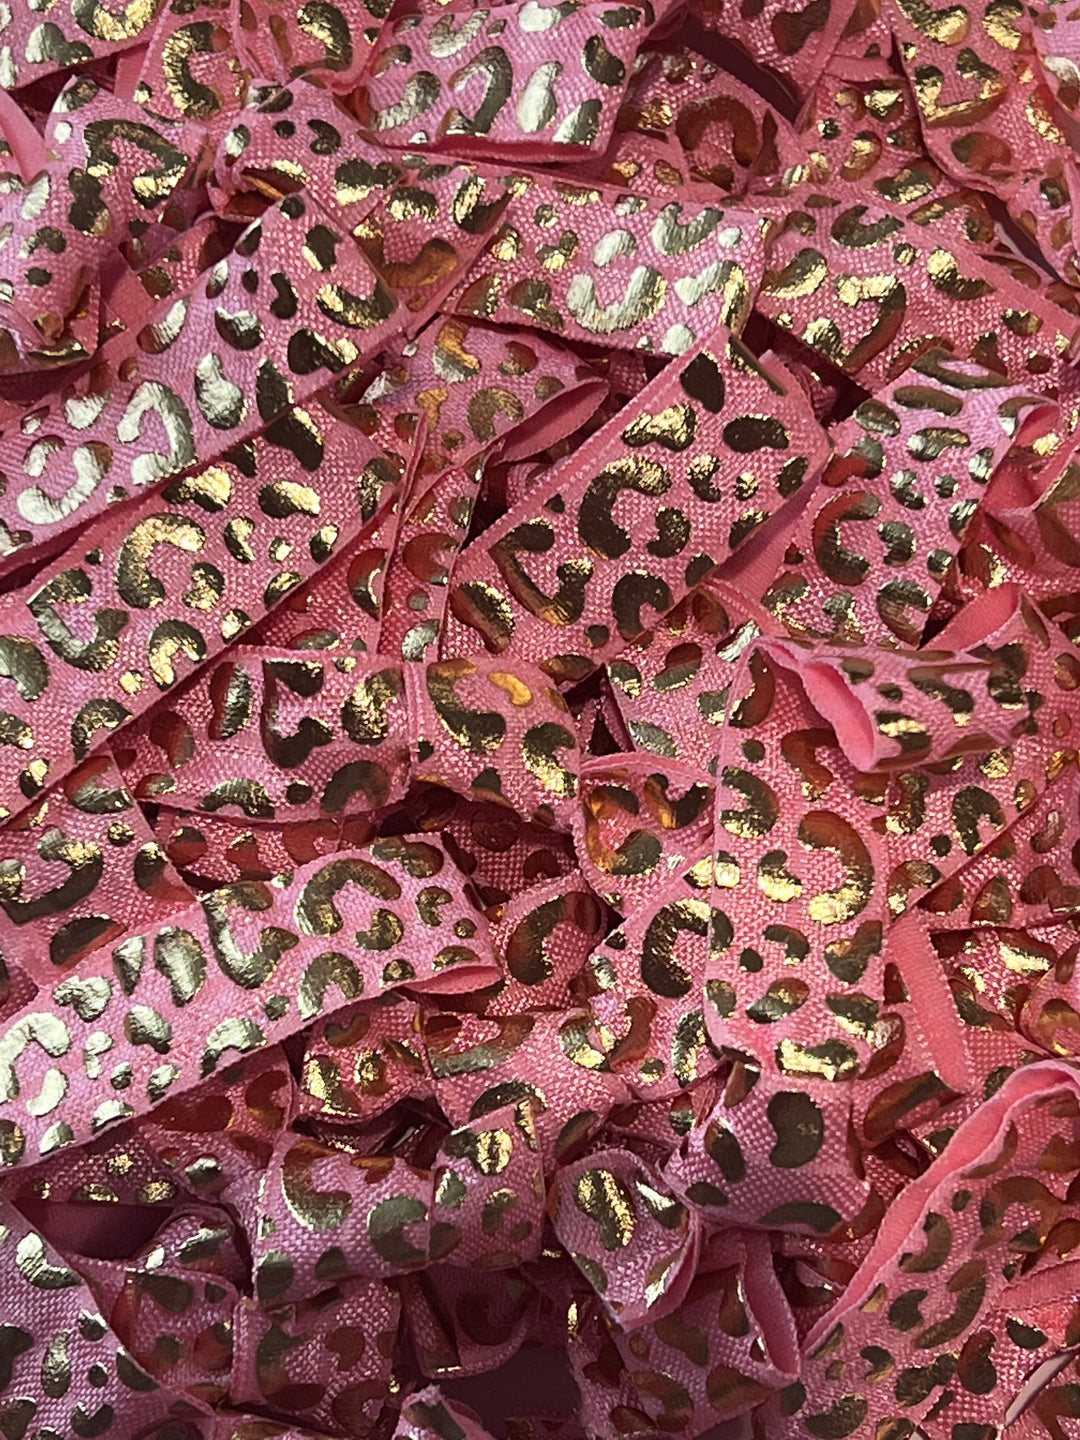 Pink Cheetah Print Foil Design Hair Ties